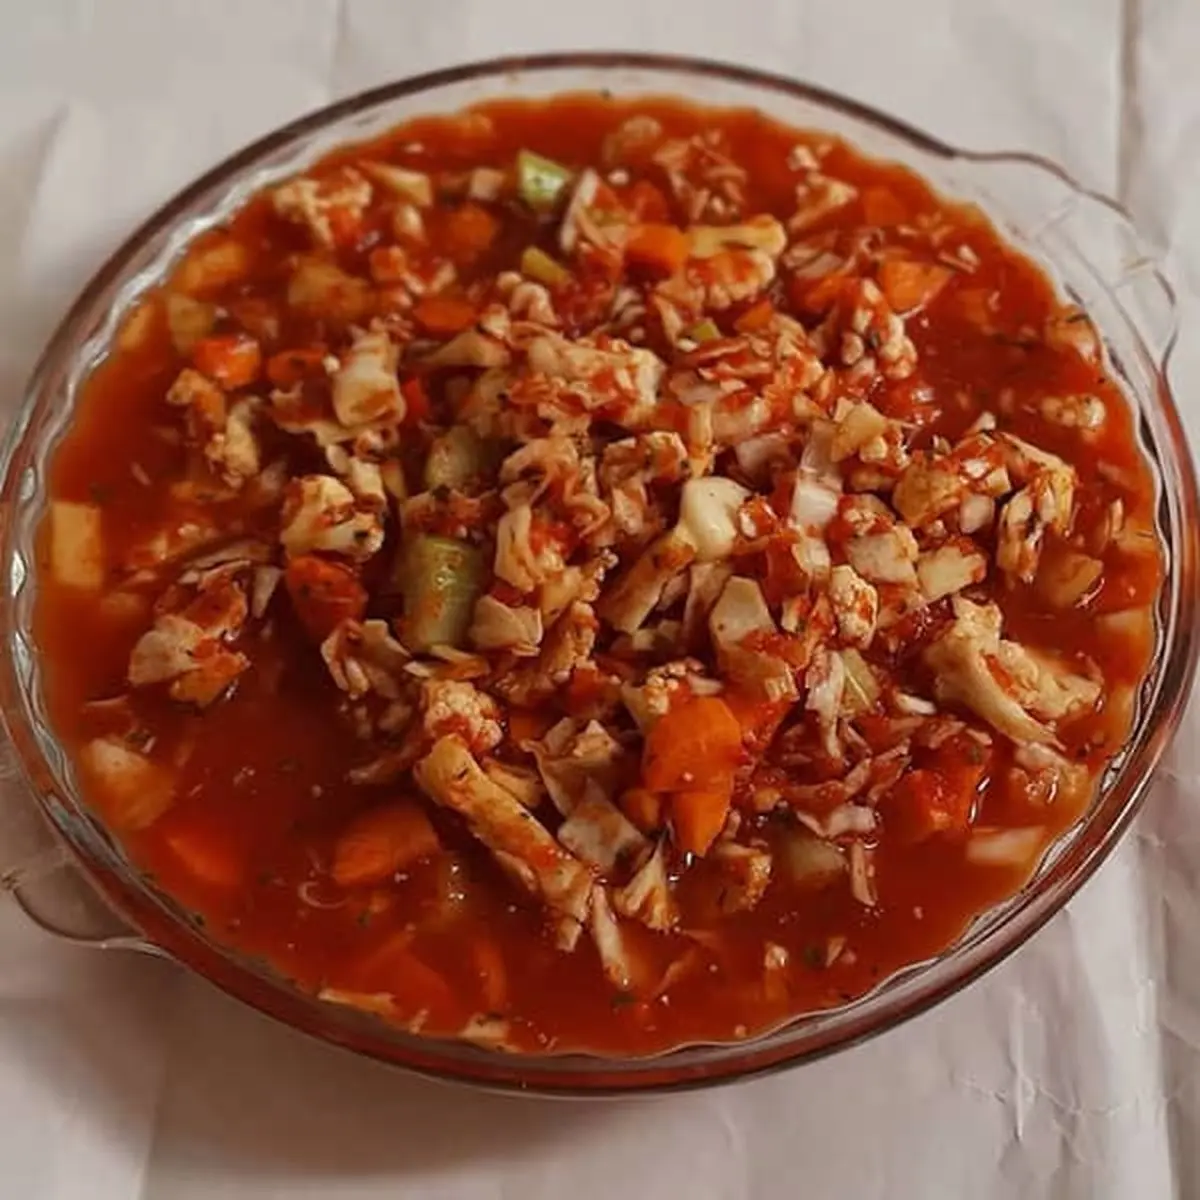 یه عمر ترشی گوجه رو اشتباه درست میکردیم! | طرز تهیه ترشی گوجه فرنگی خوشمزه به روش تبریزی‌ها! + ویدئو